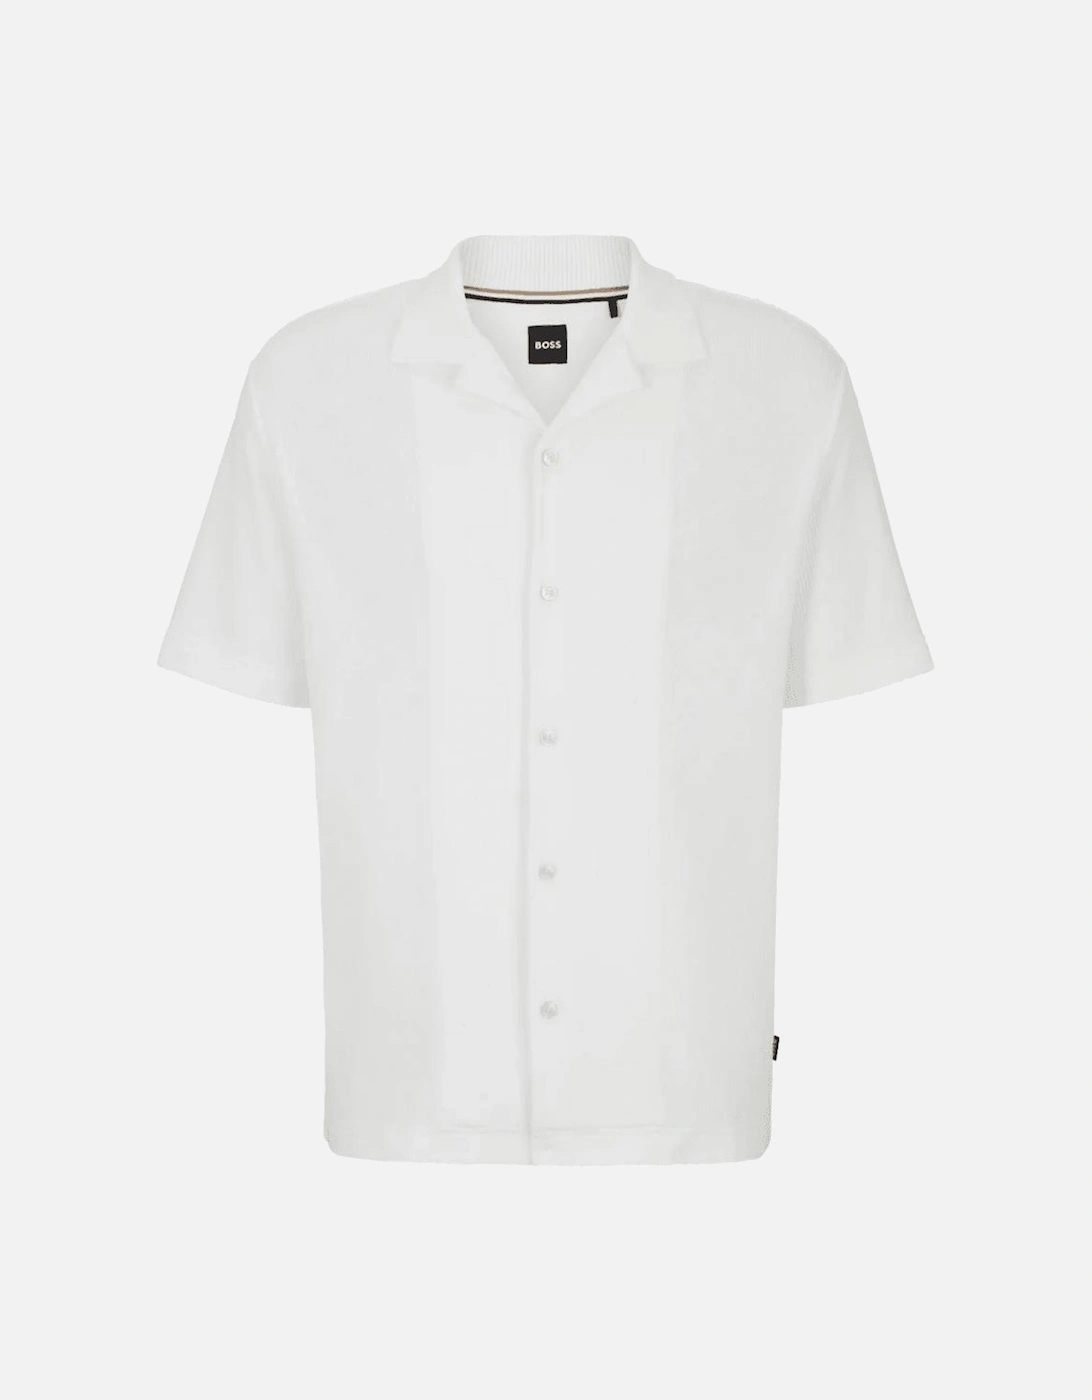 Powell 129 Regular Fit Short Sleeve White Shirt, 4 of 3